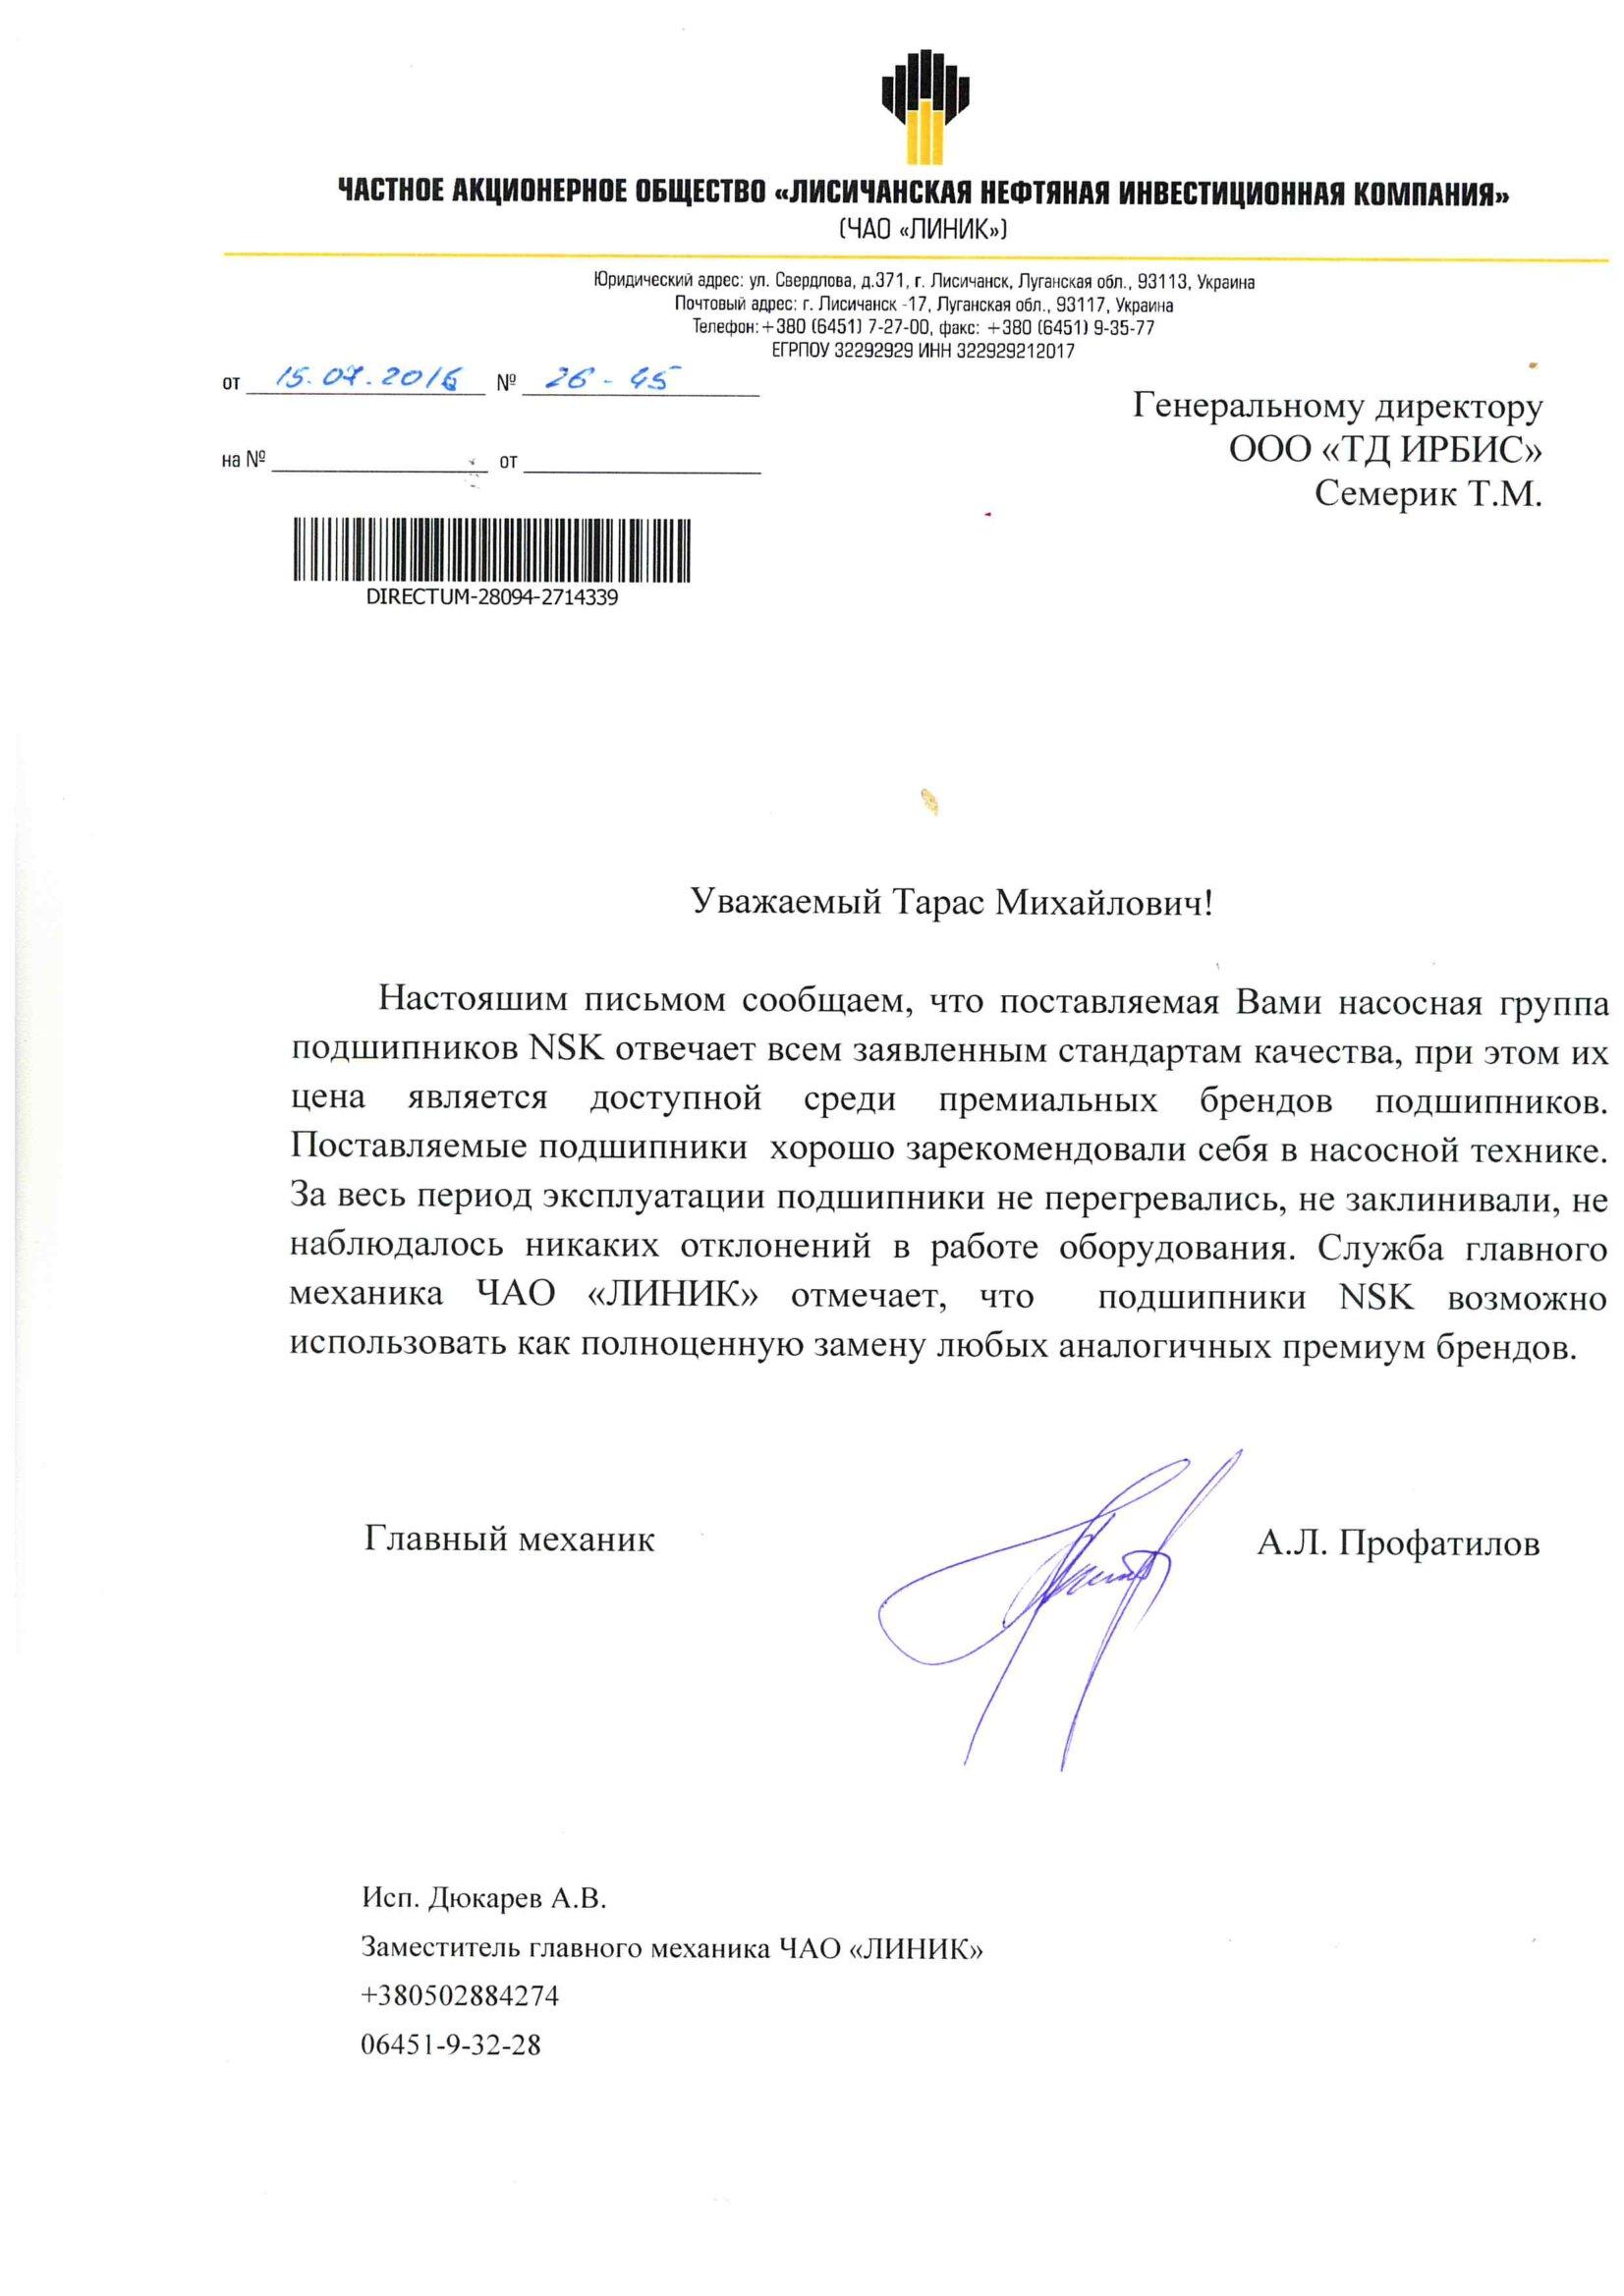 Рекомендаційний лист ПрАТ ЛИНИК 15.07.16 (NSK)